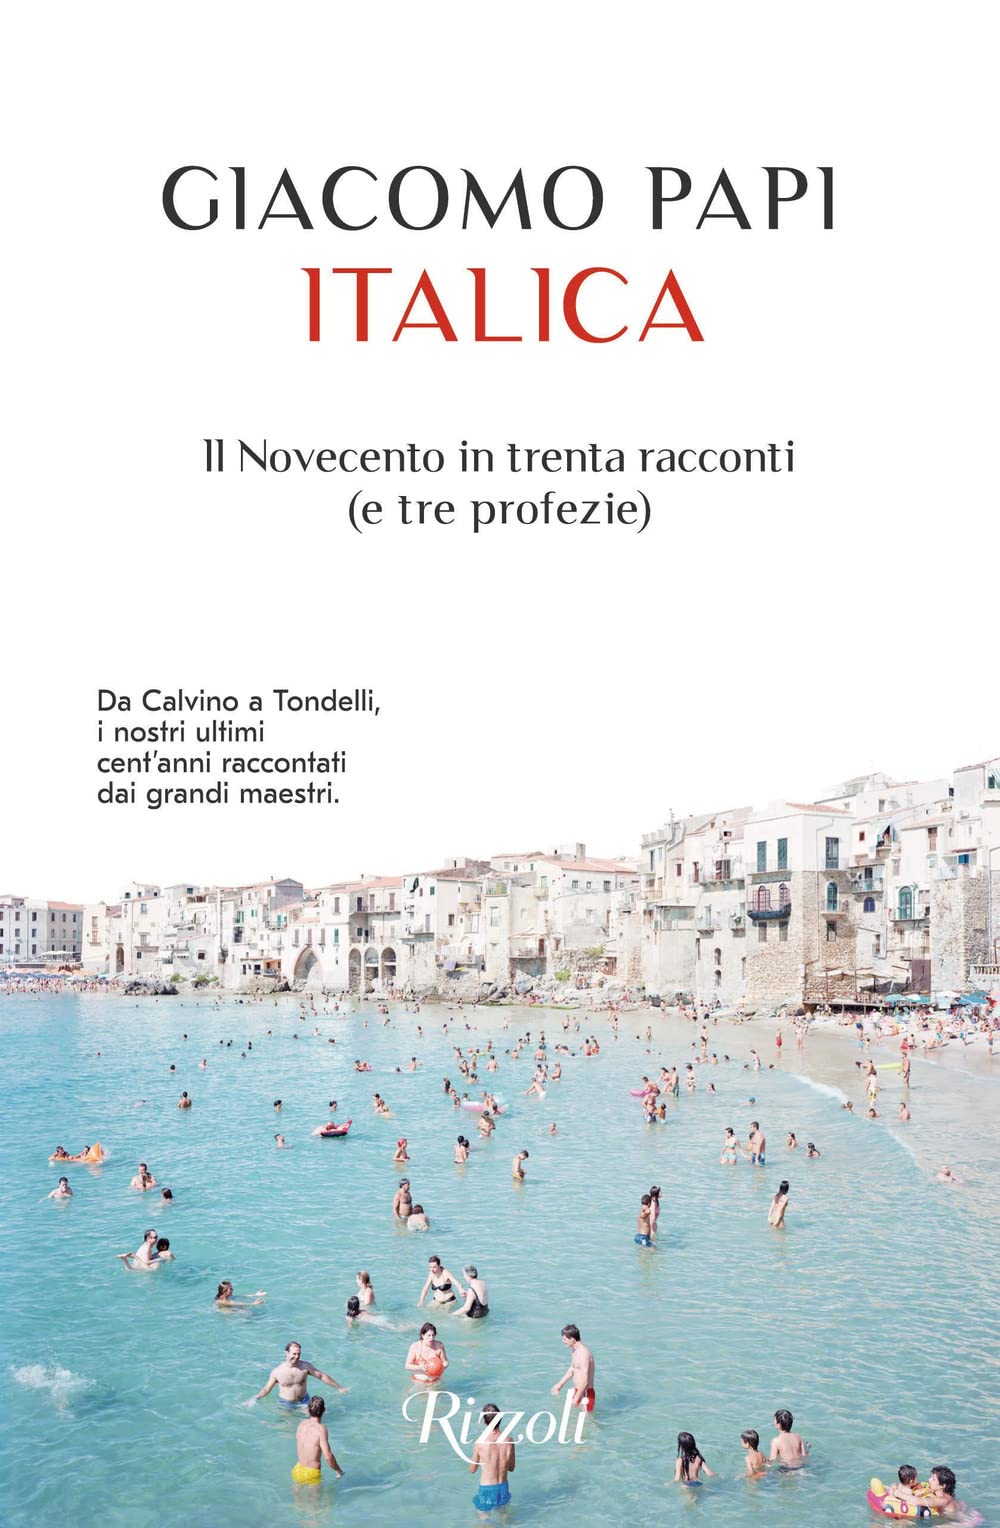 Italica, by Giacomo Papi